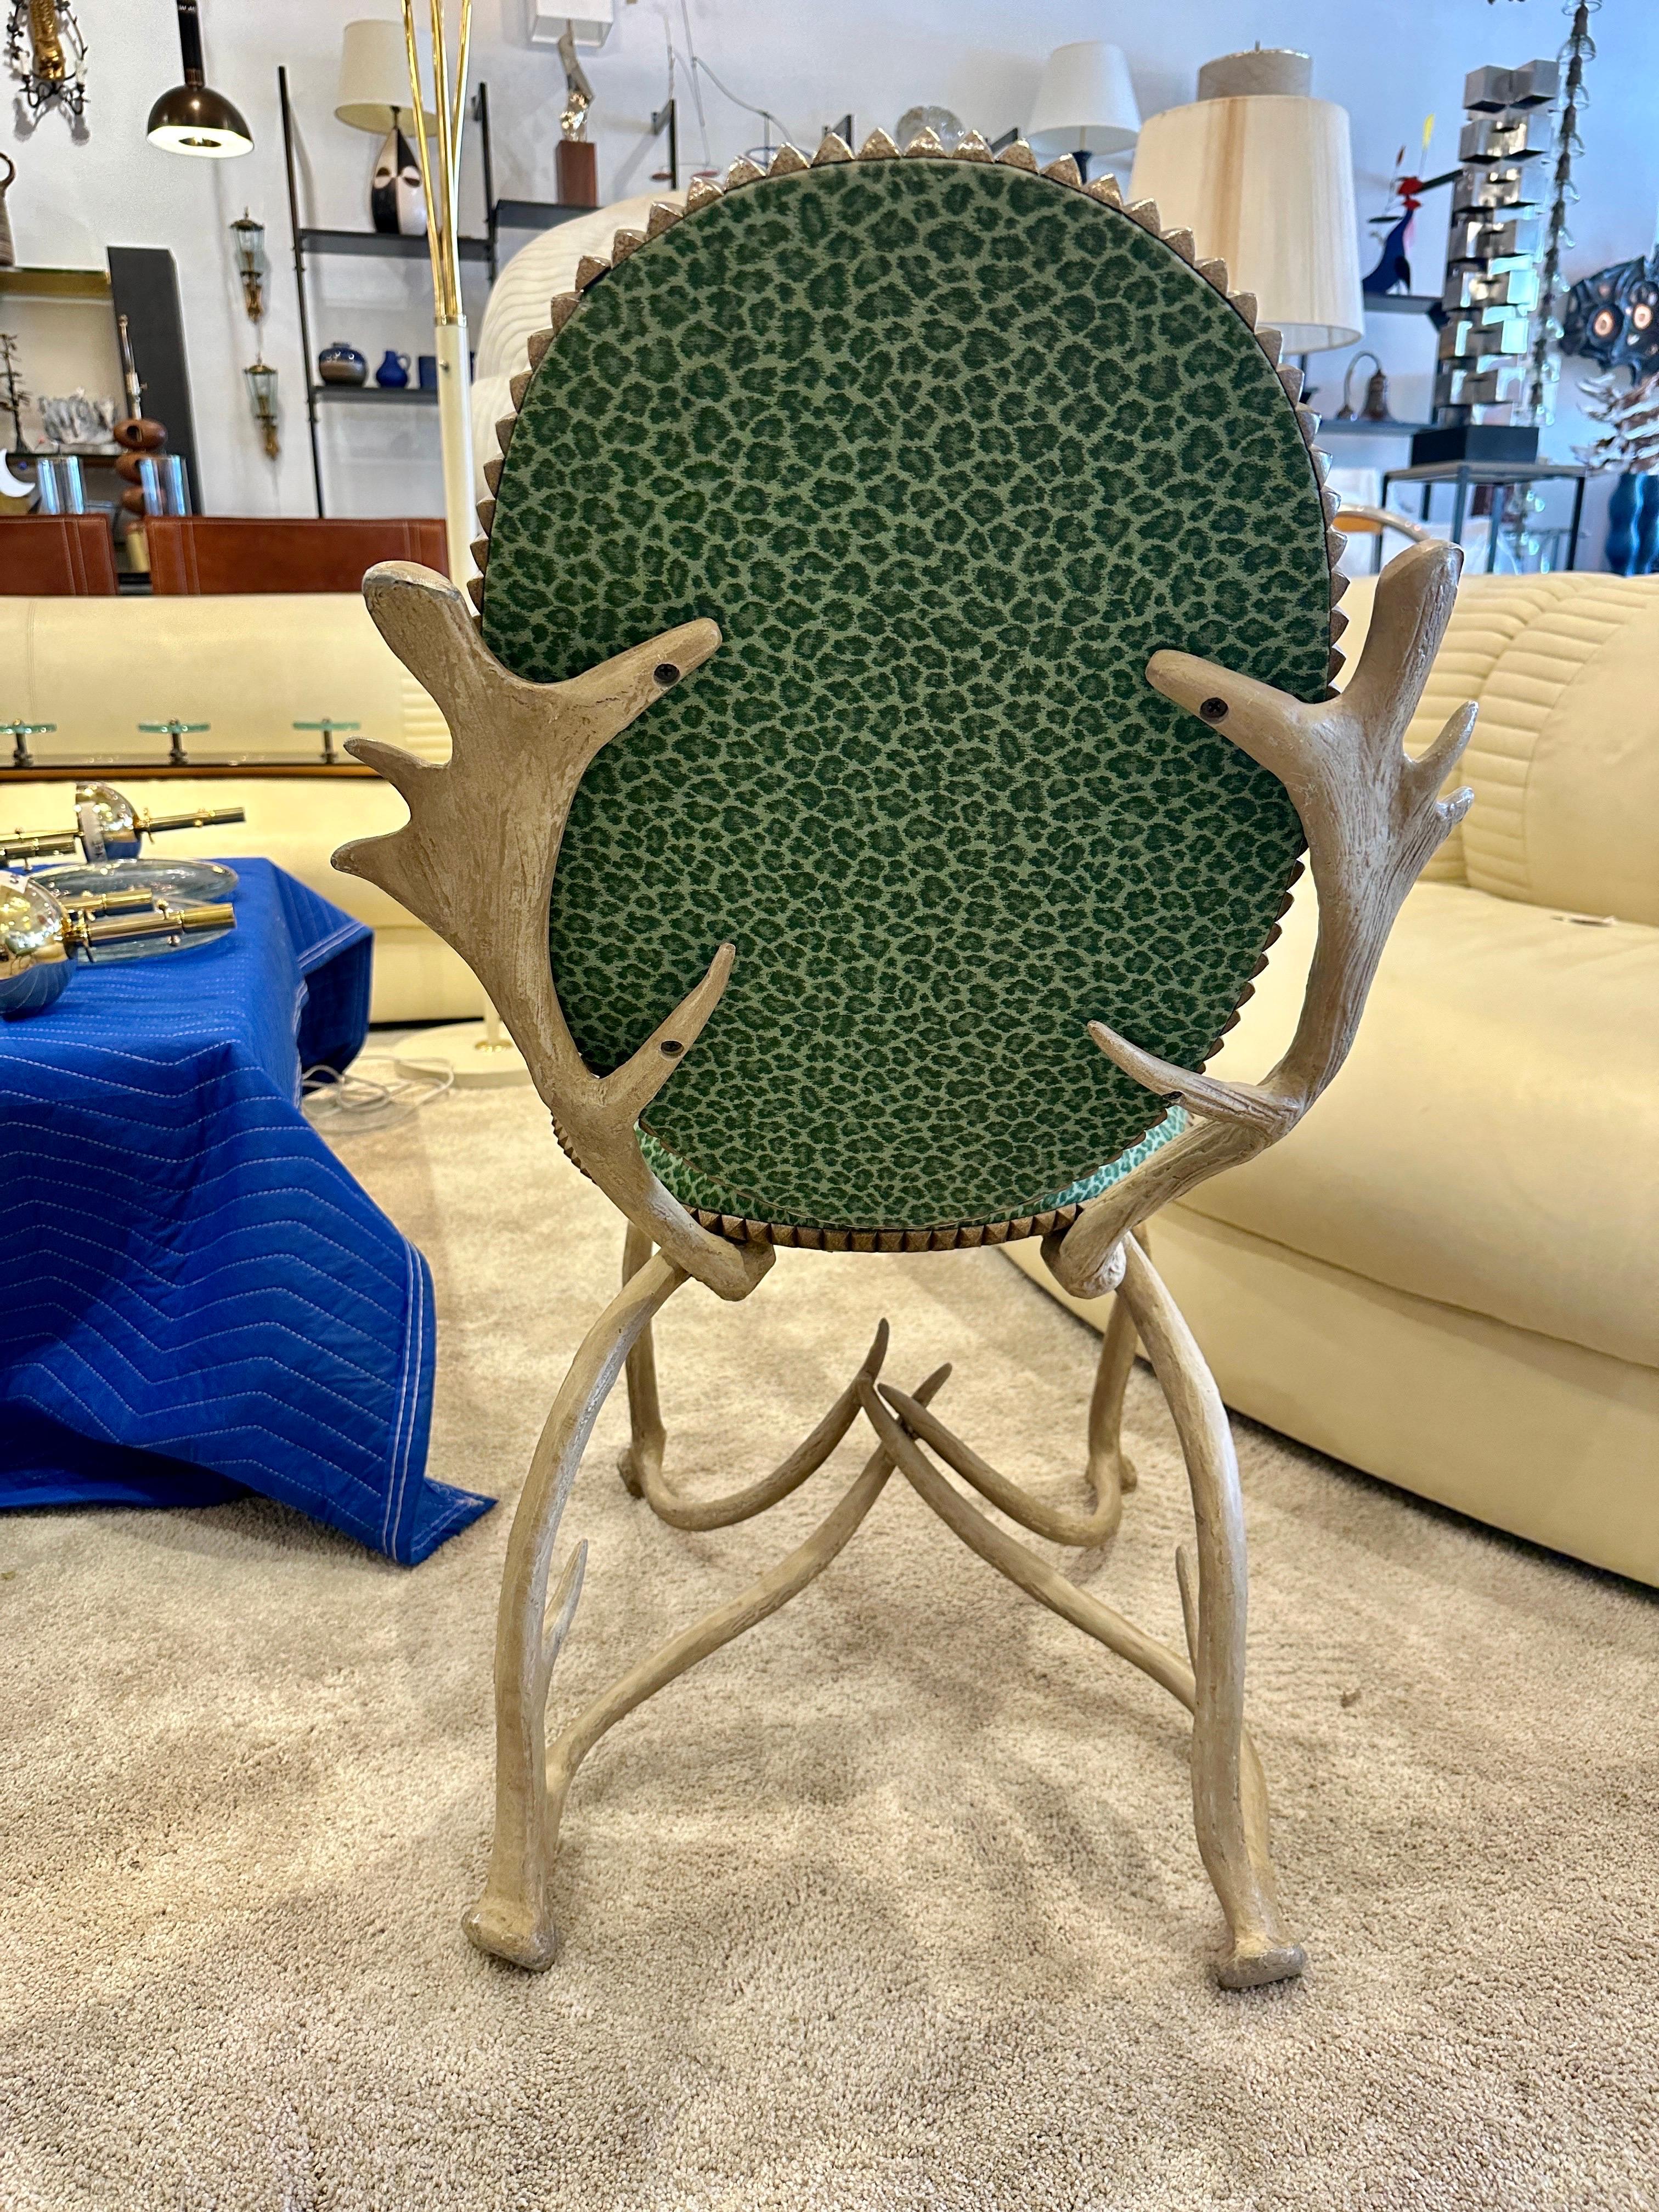 Une chaise fantaisiste en aluminium des années 1970 conçue par Arthur Court, San Francisco (1928-2015) ; un nouveau processus innovant de moulage de l'aluminium a conduit Arthur et Arthur Court Designs dans une nouvelle ère ; ses meubles et